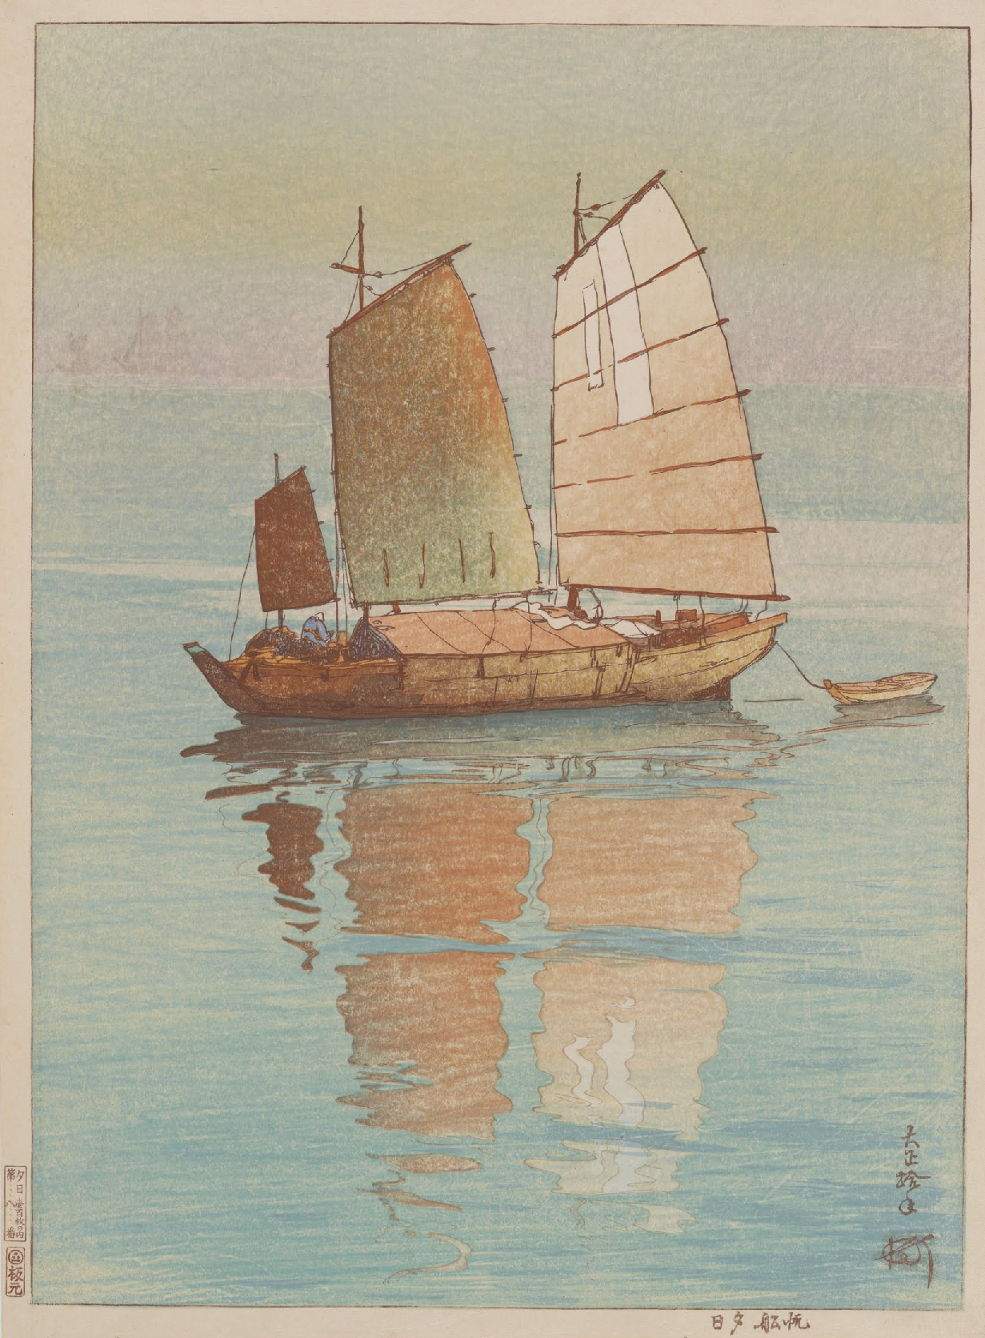 Hiroshi Yoshida “Sailing Boats, Evening” 1921 woodblock print